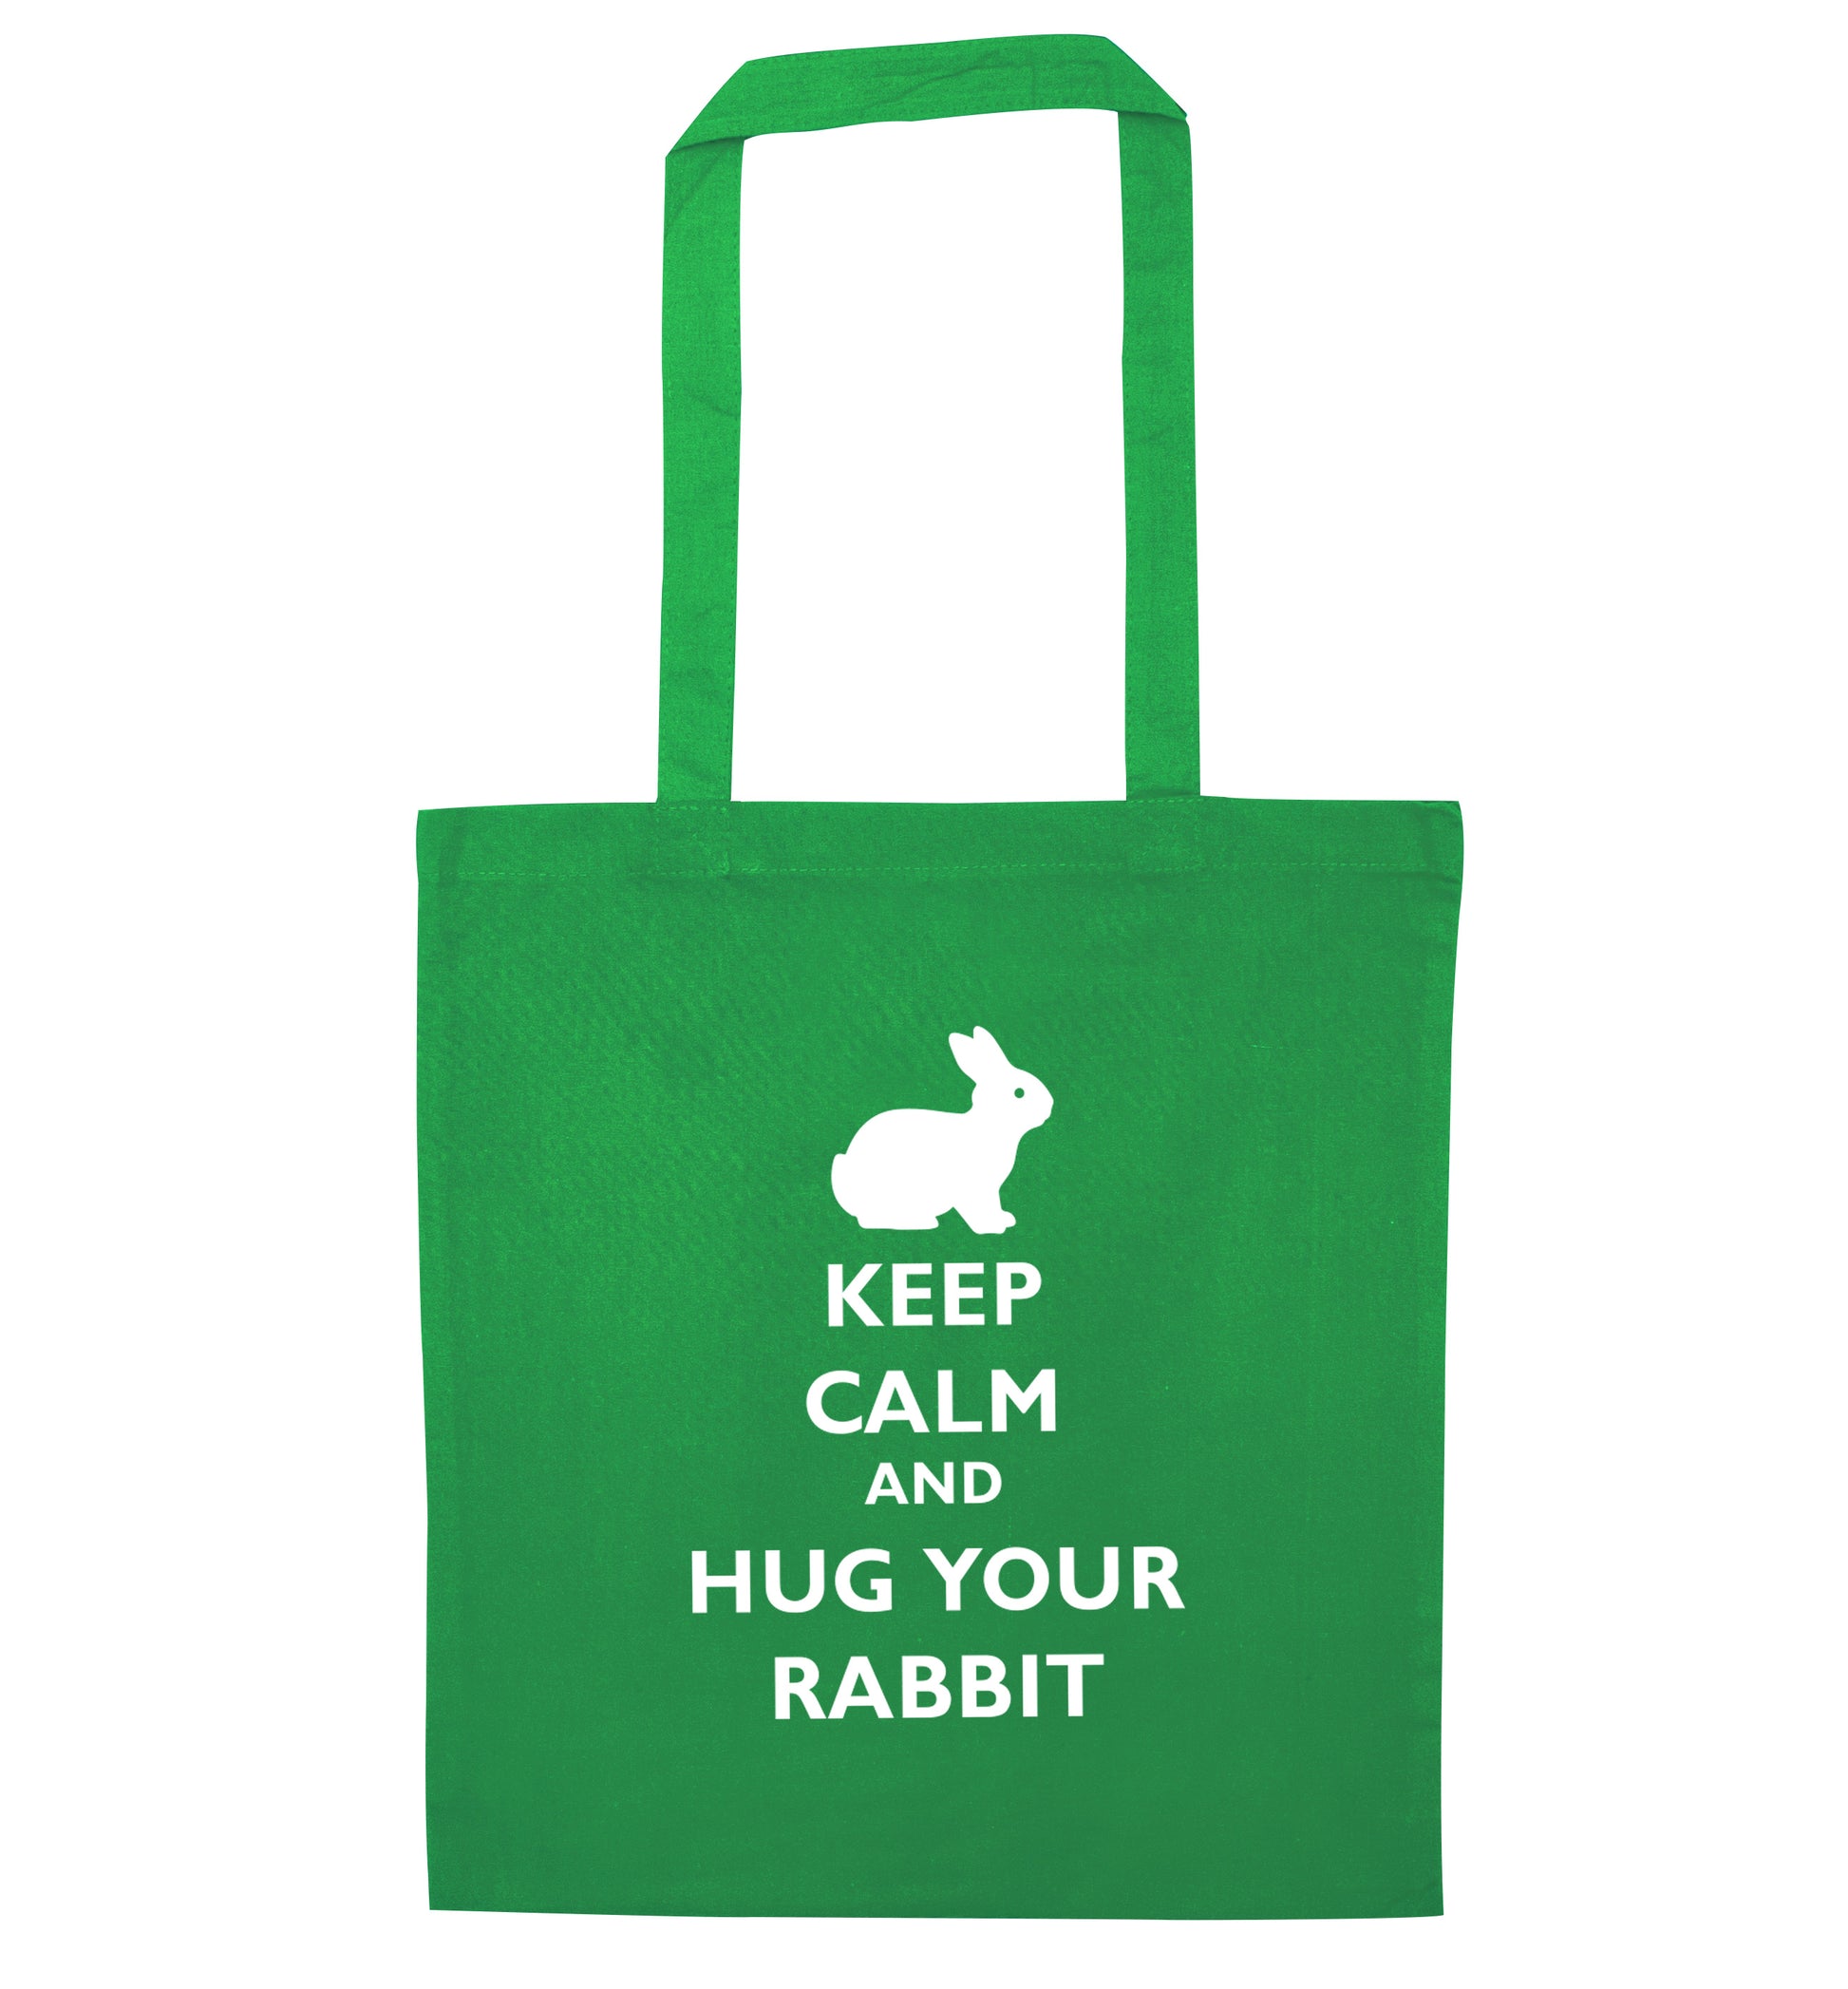 Keep calm and hug your rabbit green tote bag